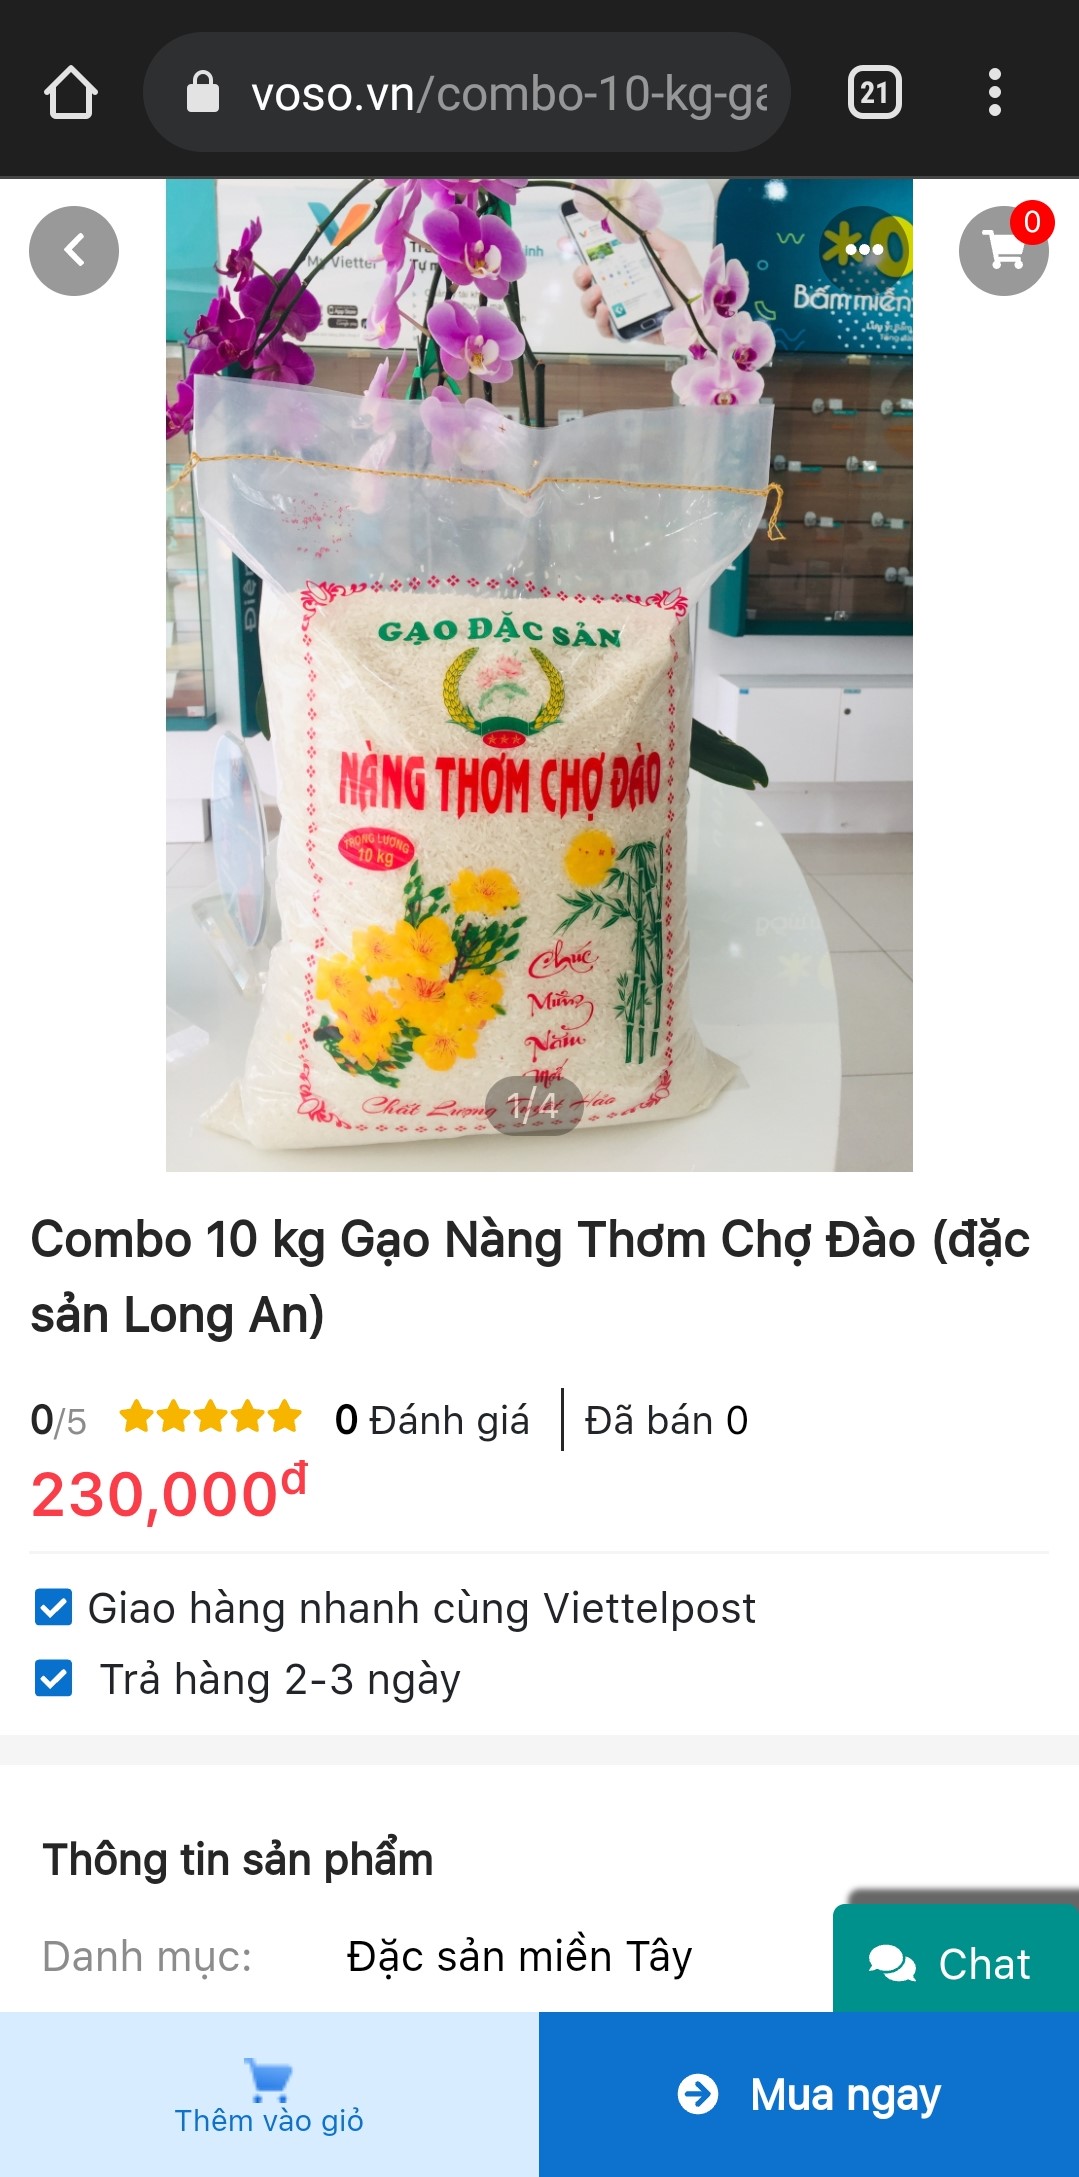 Nông sản Long An được bán trên sàn thương mại điện tử Voso.vn